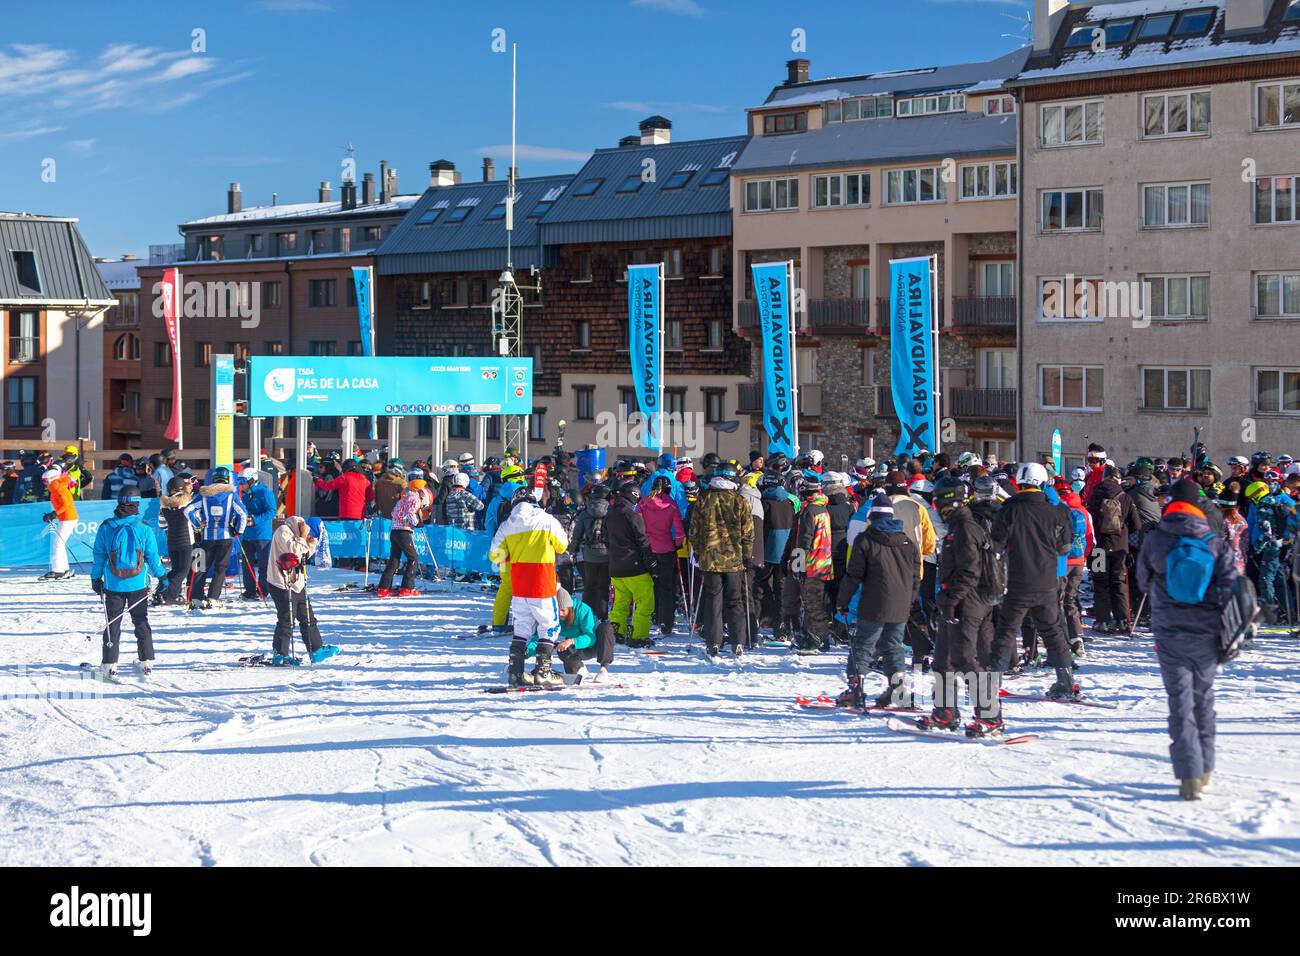 Pas de la Casa, Andorra, Dezember 07 2019: Menschen, die auf der Skipiste von Grandvalira auf den Skilift warten. Stockfoto